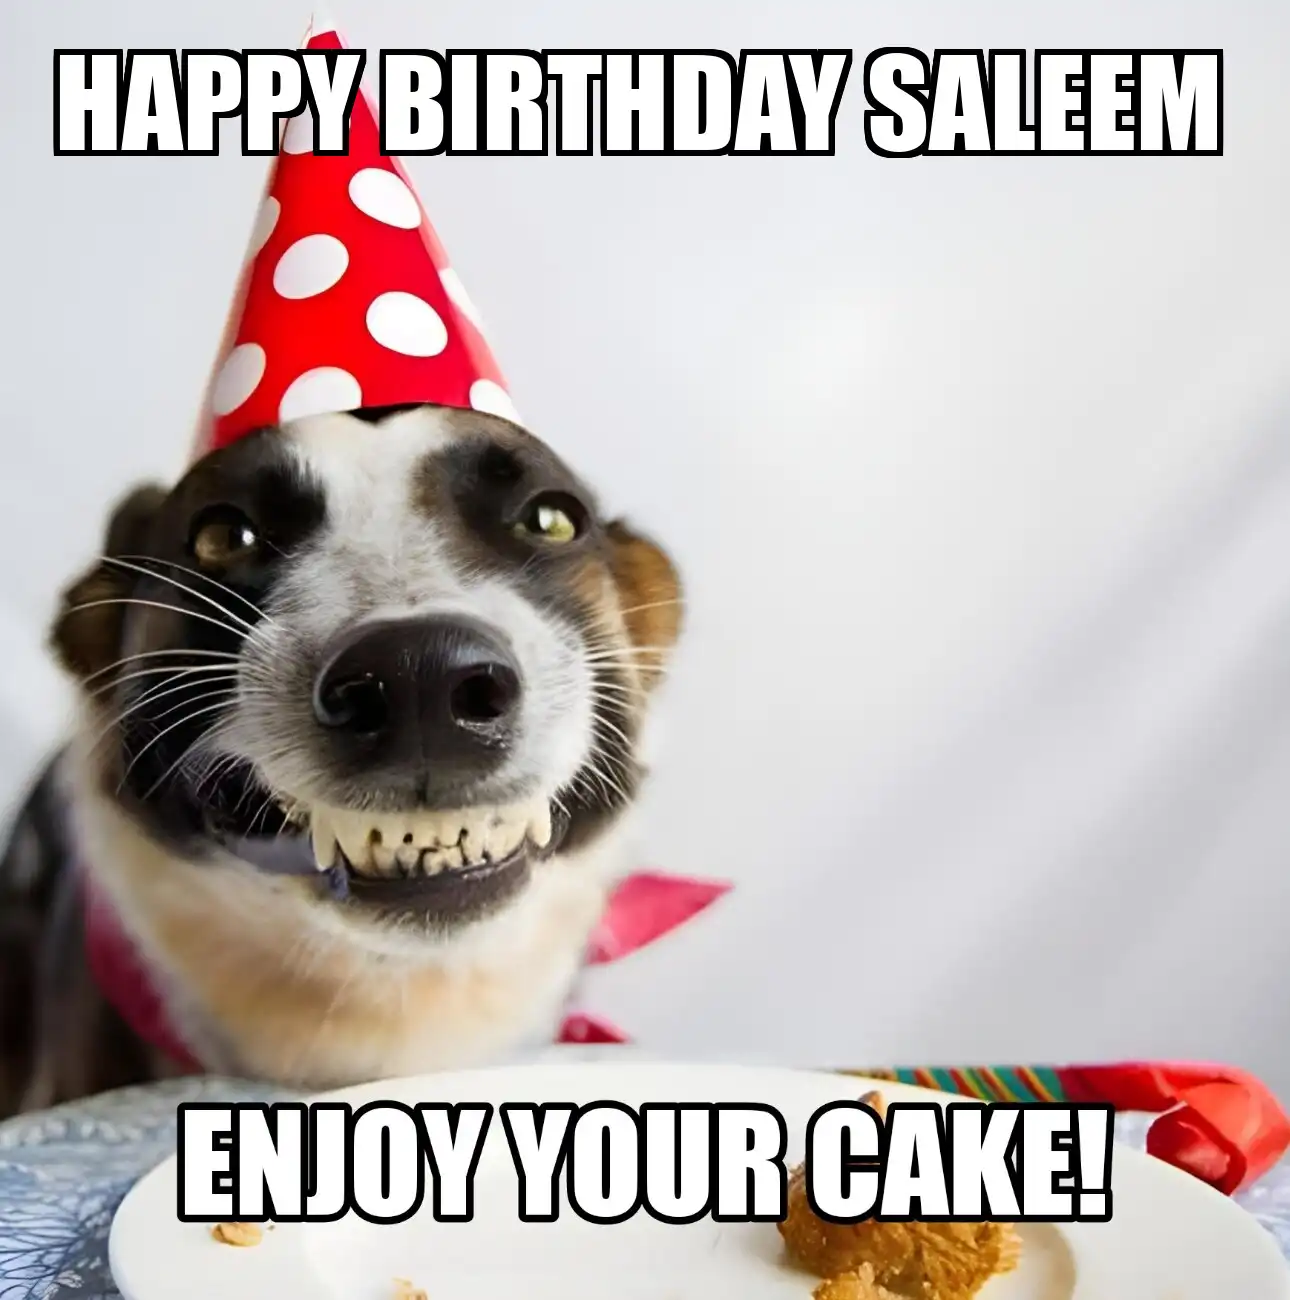 Happy Birthday Saleem Enjoy Your Cake Dog Meme